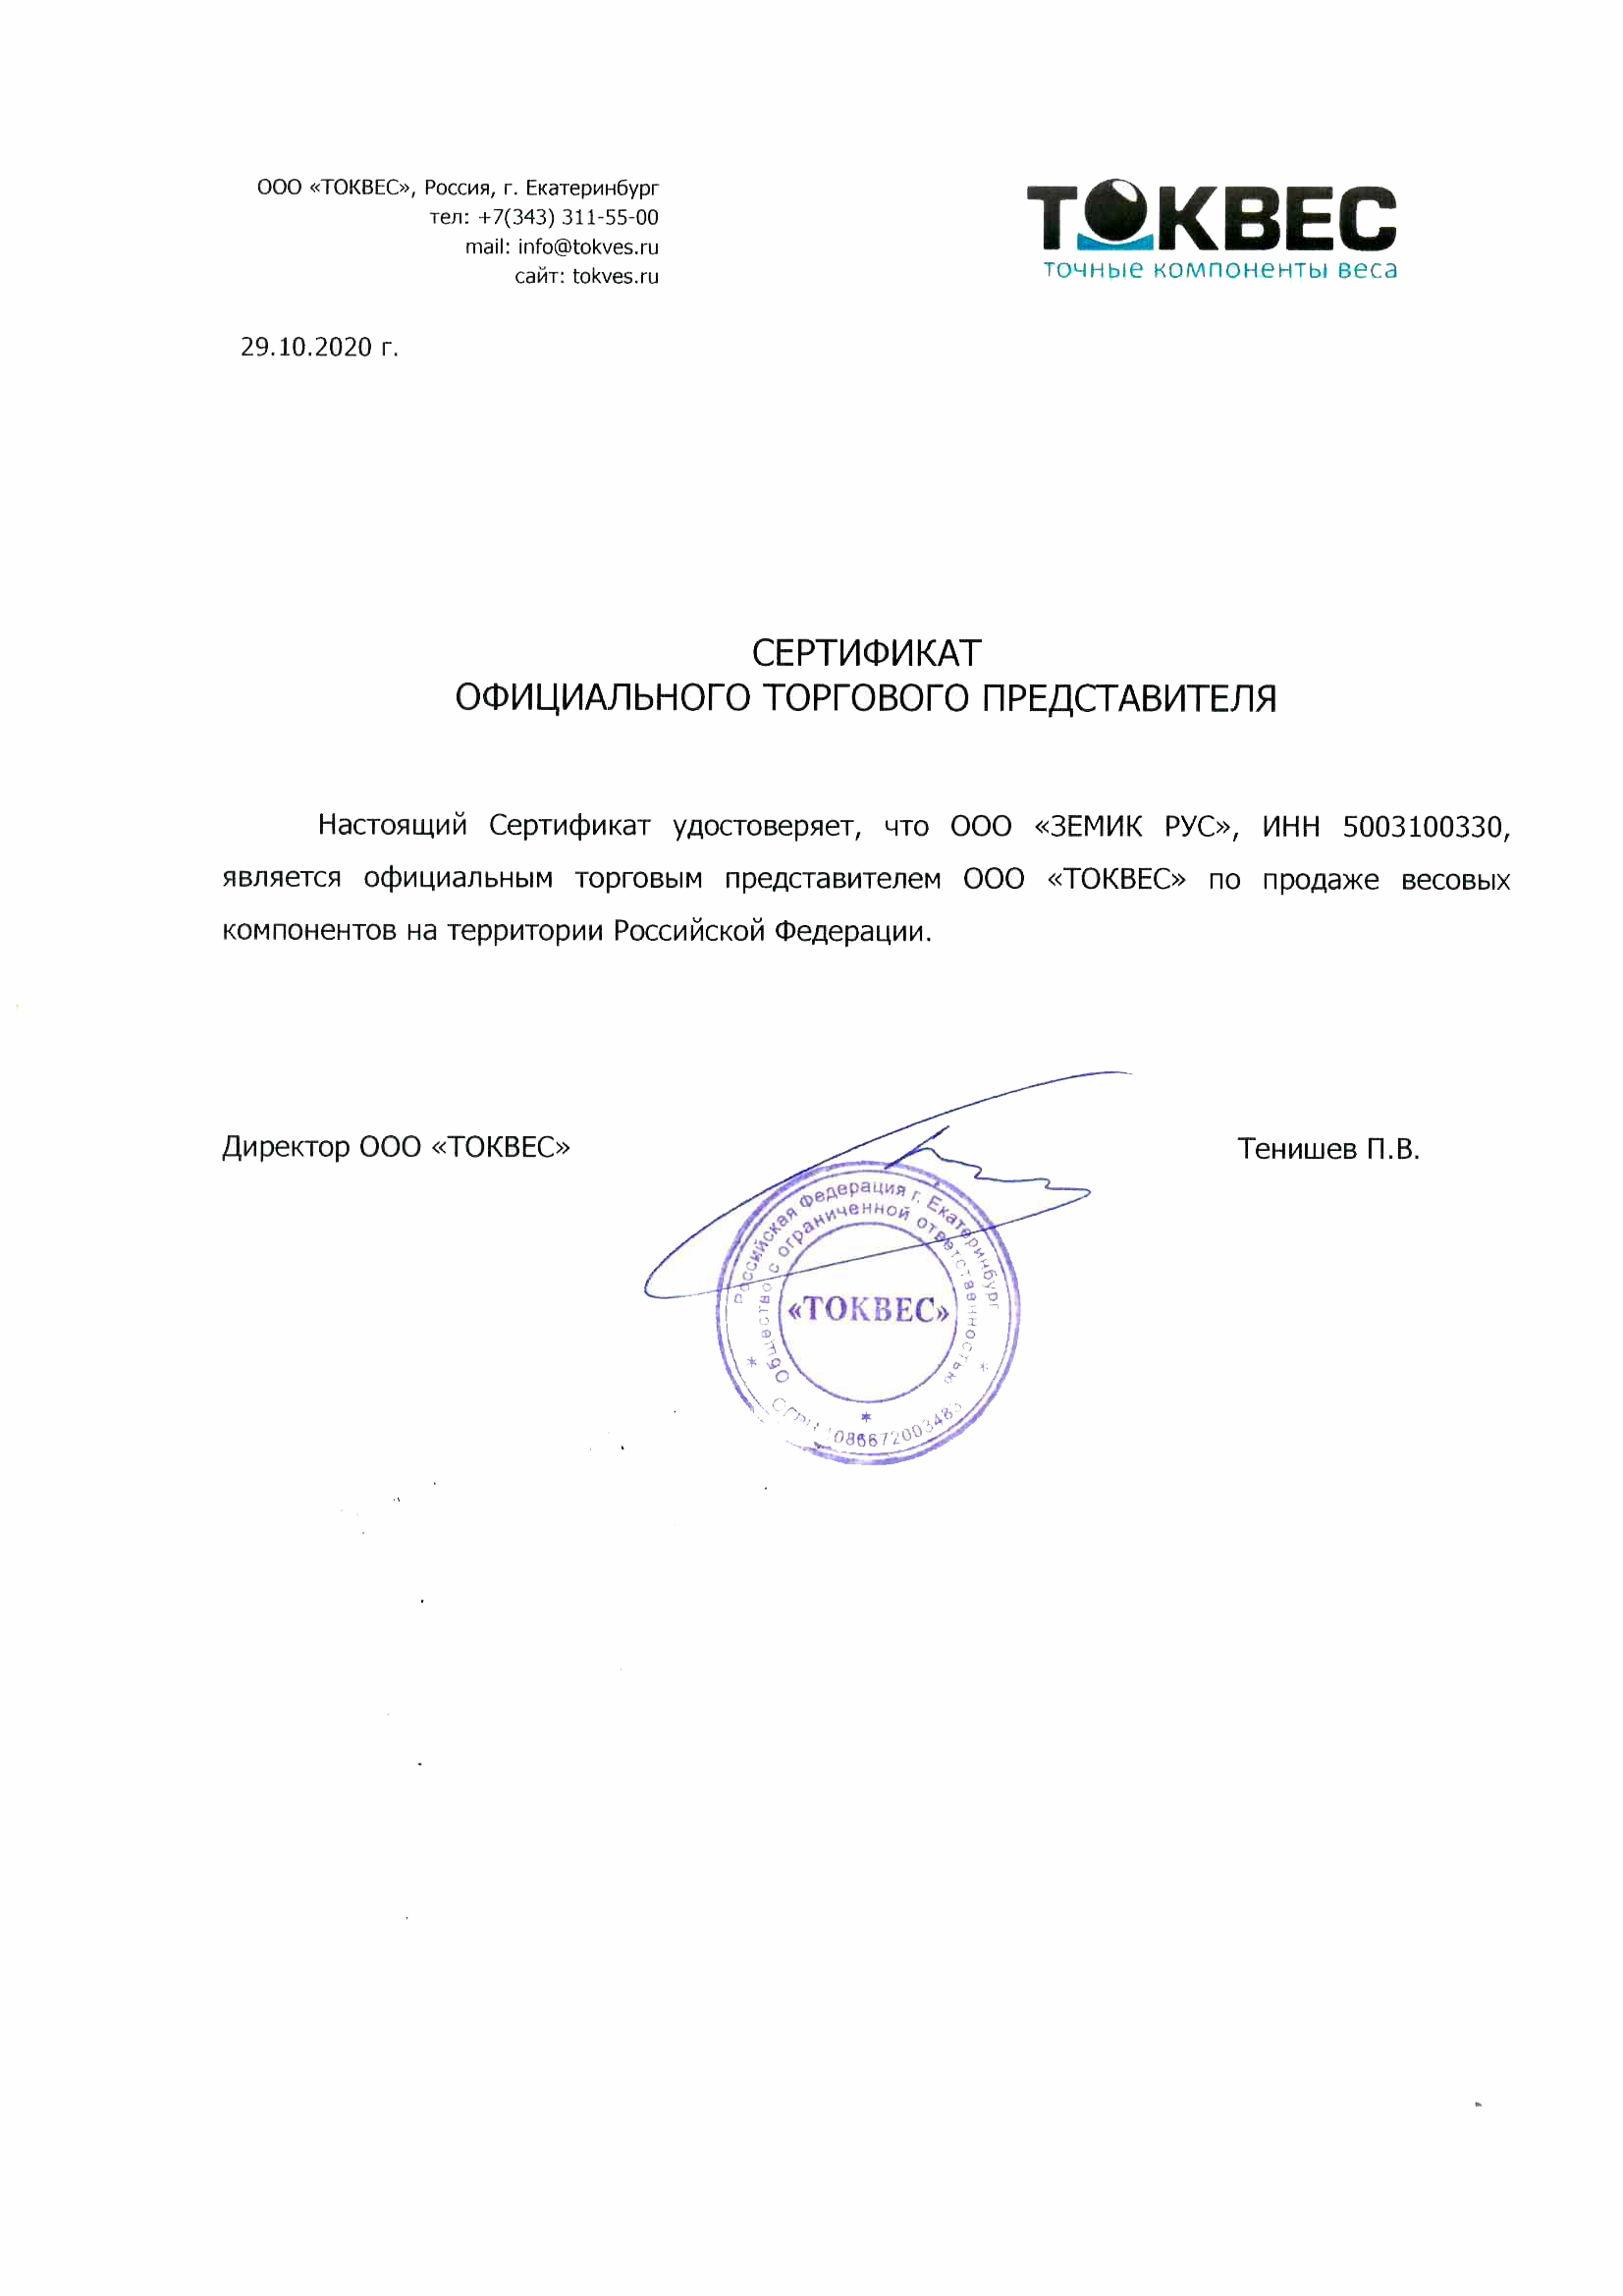 Земик Рус официальный партнер ООО Токвес